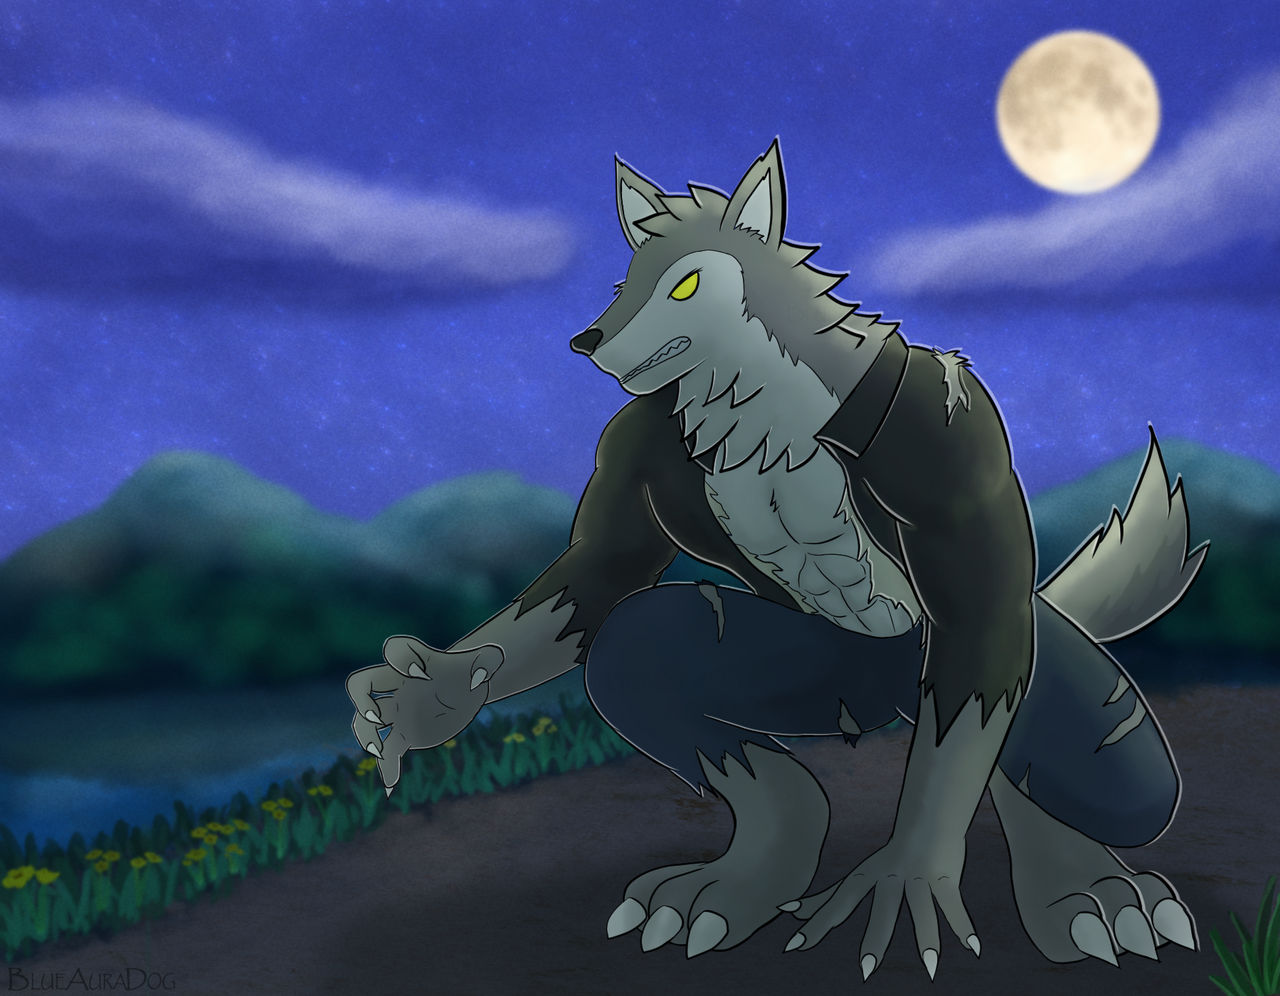 Night of the Werewolf by BlueAuraDog on DeviantArt